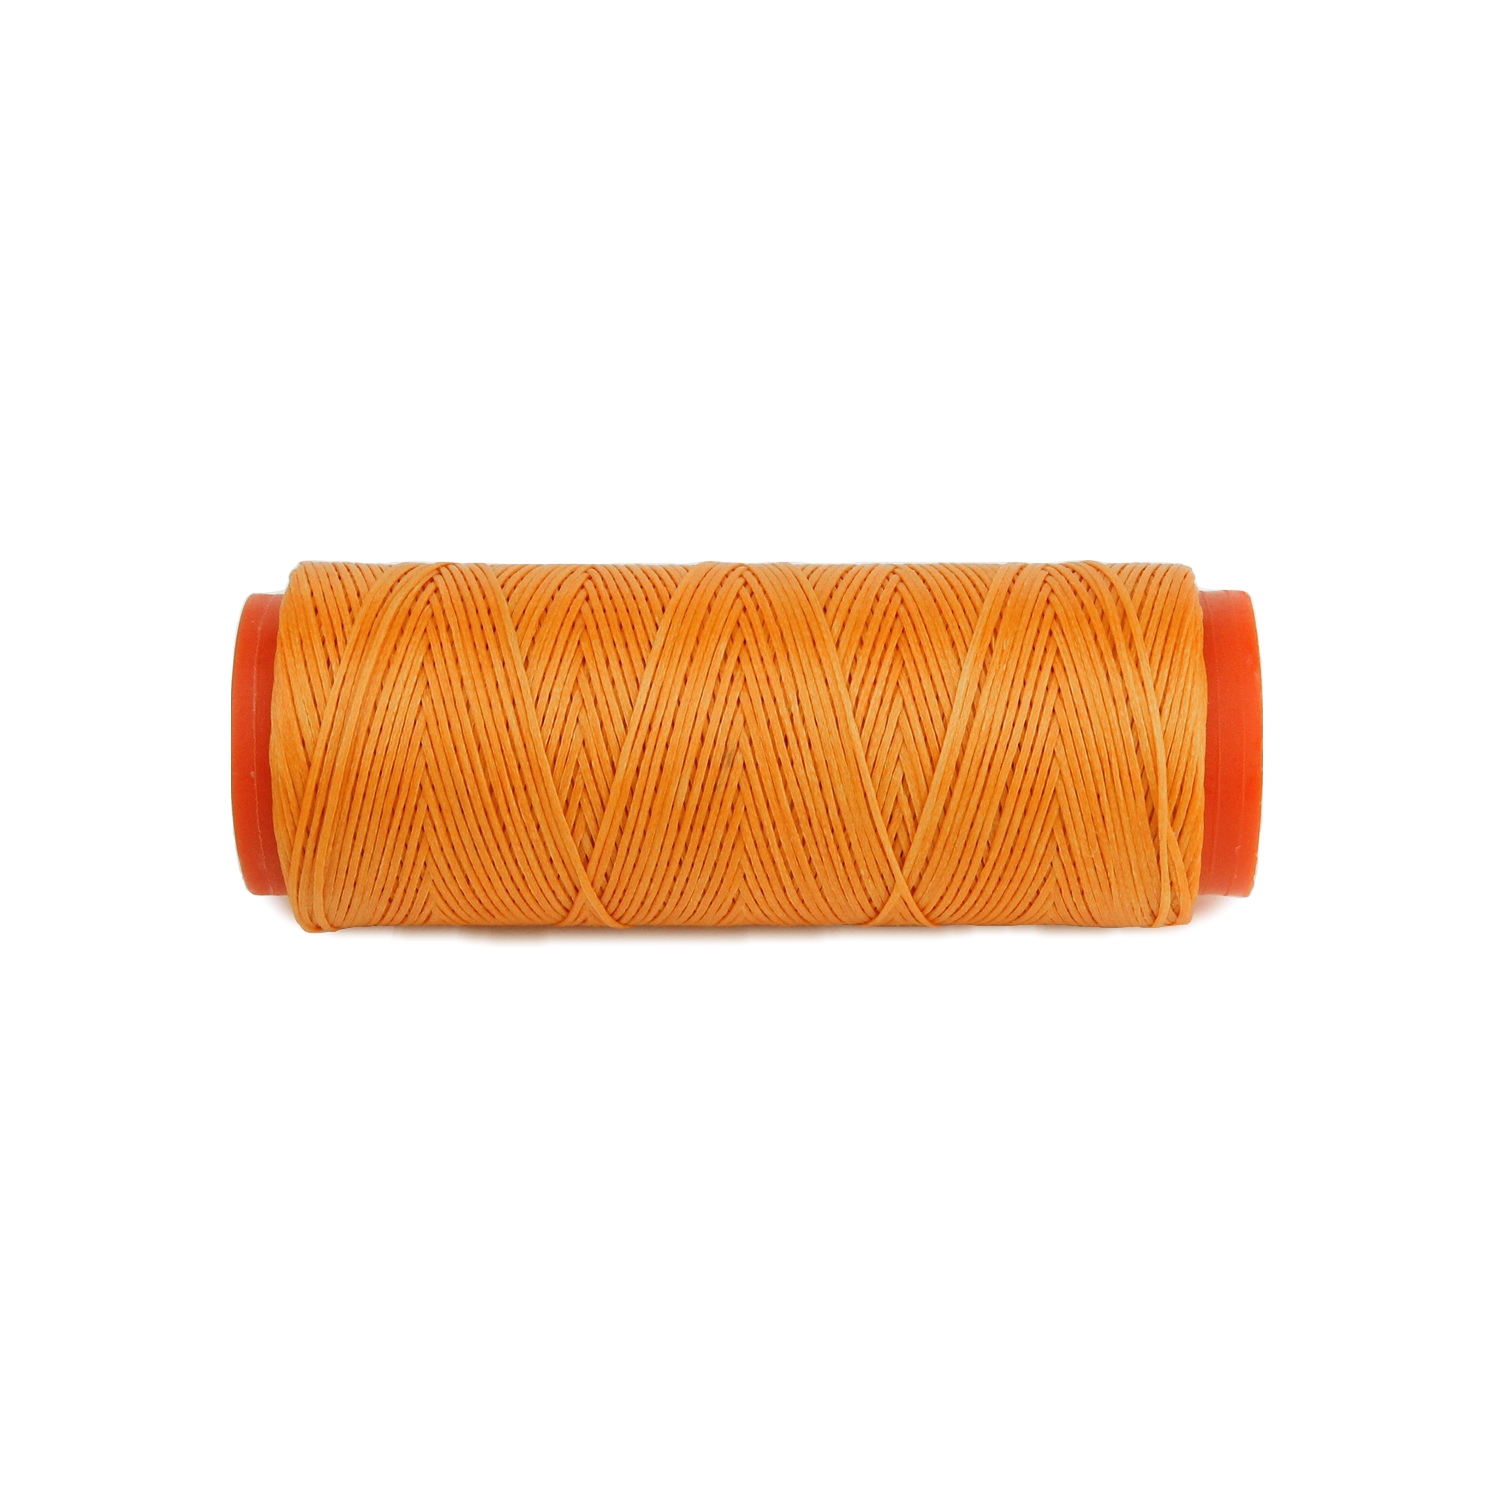 Нить для перетяжки руля вощеная (цвет оранжевый 1109), толщина 0.8 мм, длина 100 метров "Турция" детальная фотка